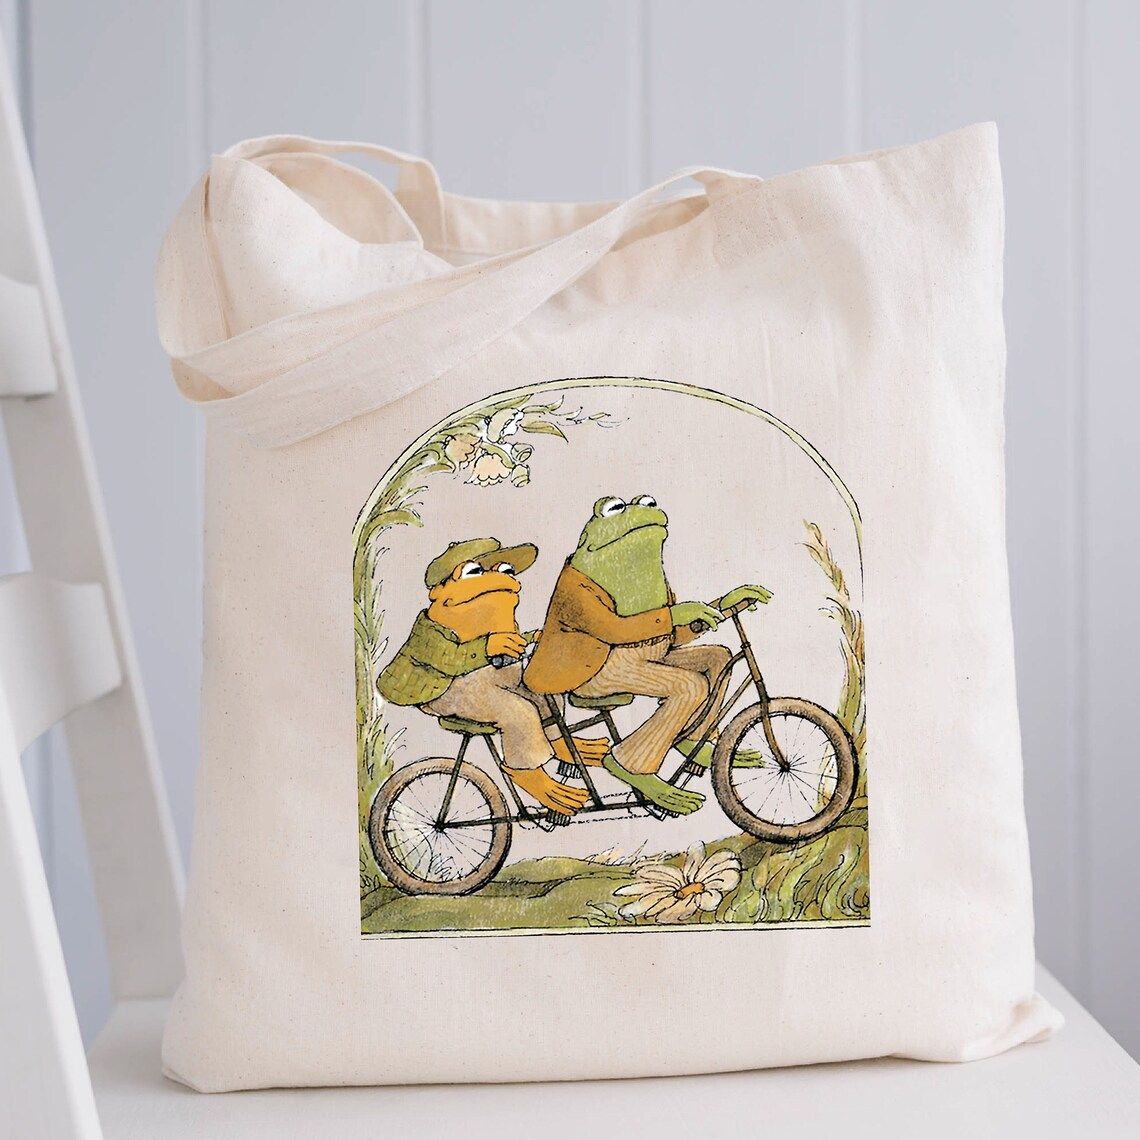 Beyaz bir sandalyede bir tuval çantası görüntüsü.  Bez çantanın üzerinde klasik Frog and Toad kitaplarından bir görüntü var.